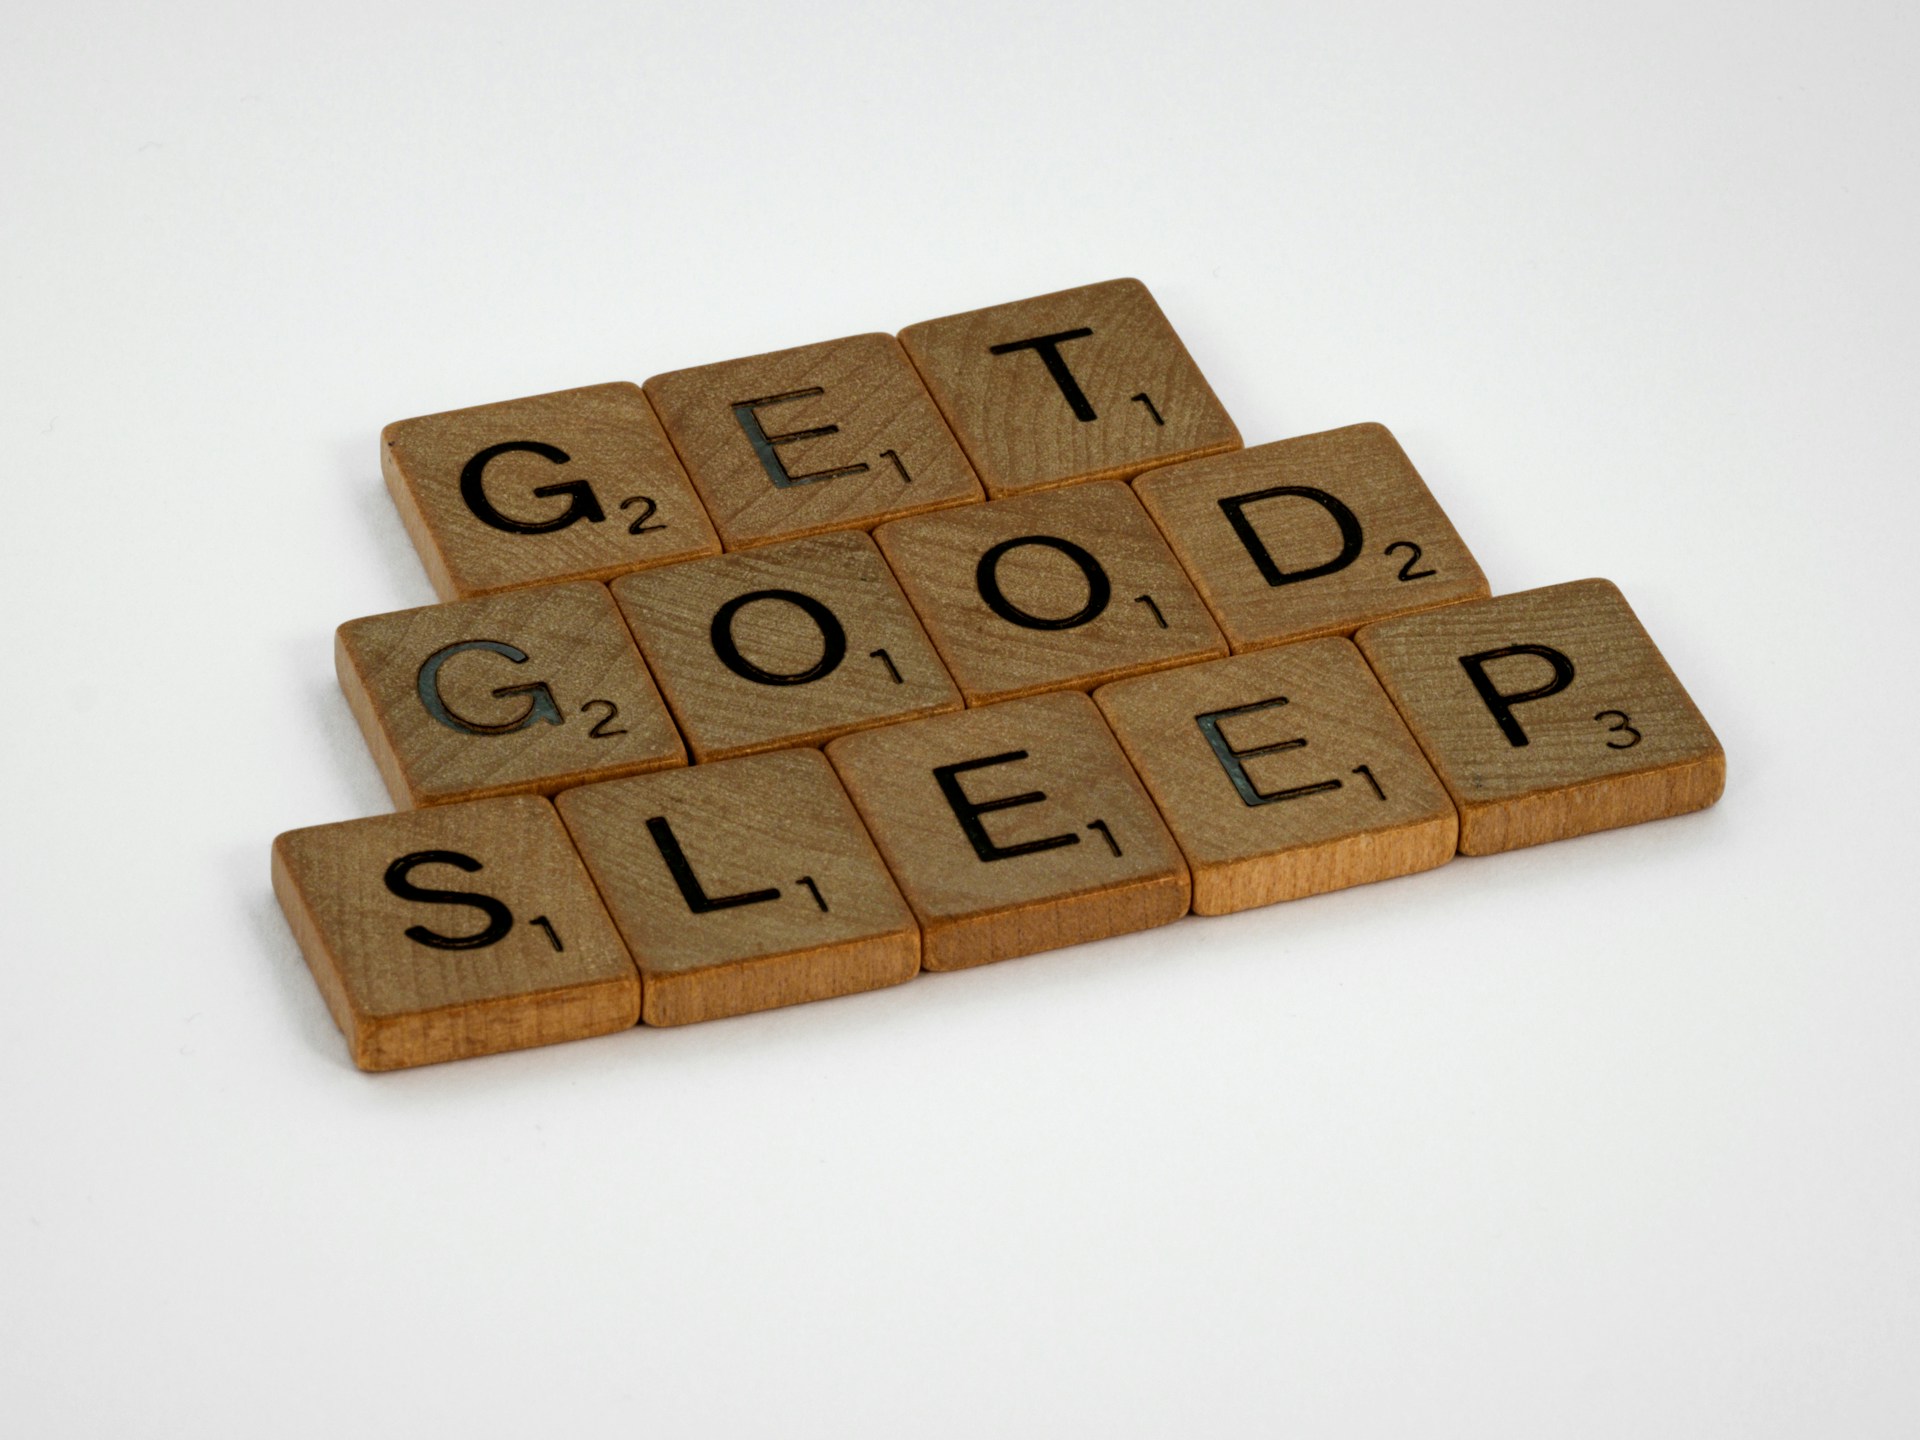 Wooden tiles spelling 'get good sleep'